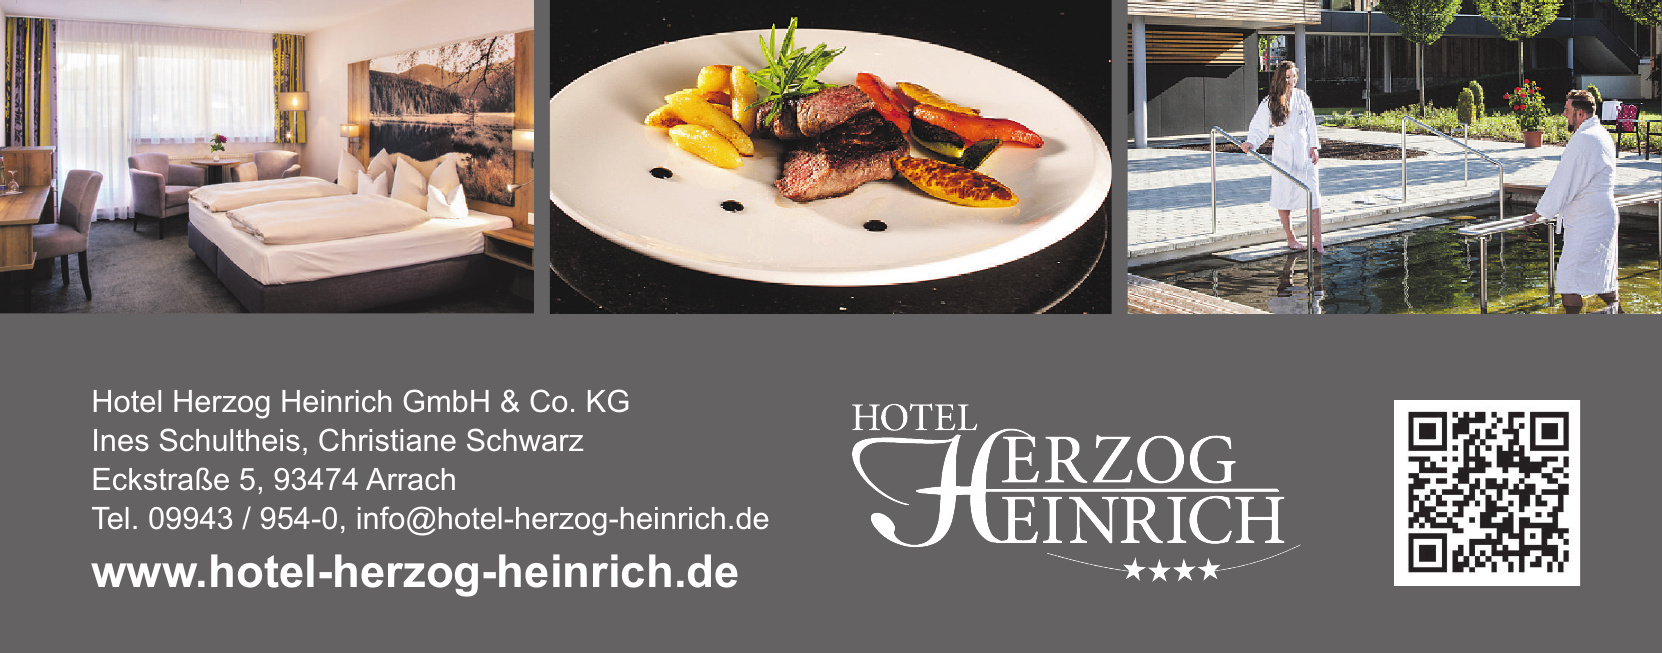 Hotel Herzog Heinrich GmbH & Co. KG